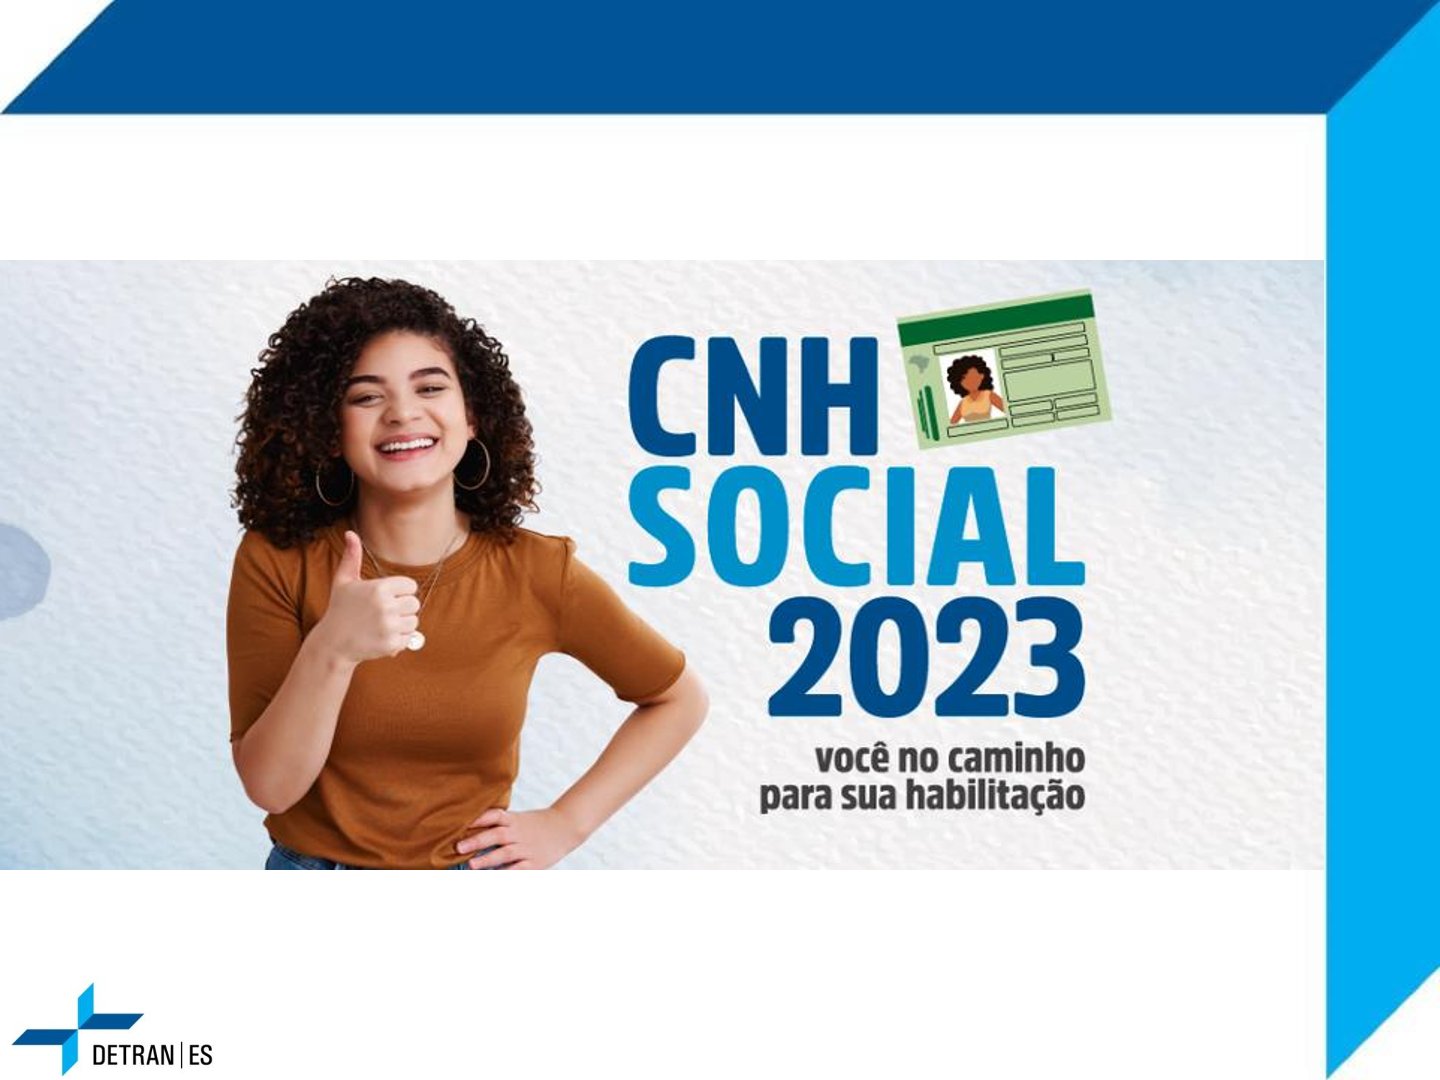 CNH SOCIAL 2023 - VOCÊ NO CAMINHO DA SUA HABILITAÇÃO - 2ª ETAPA